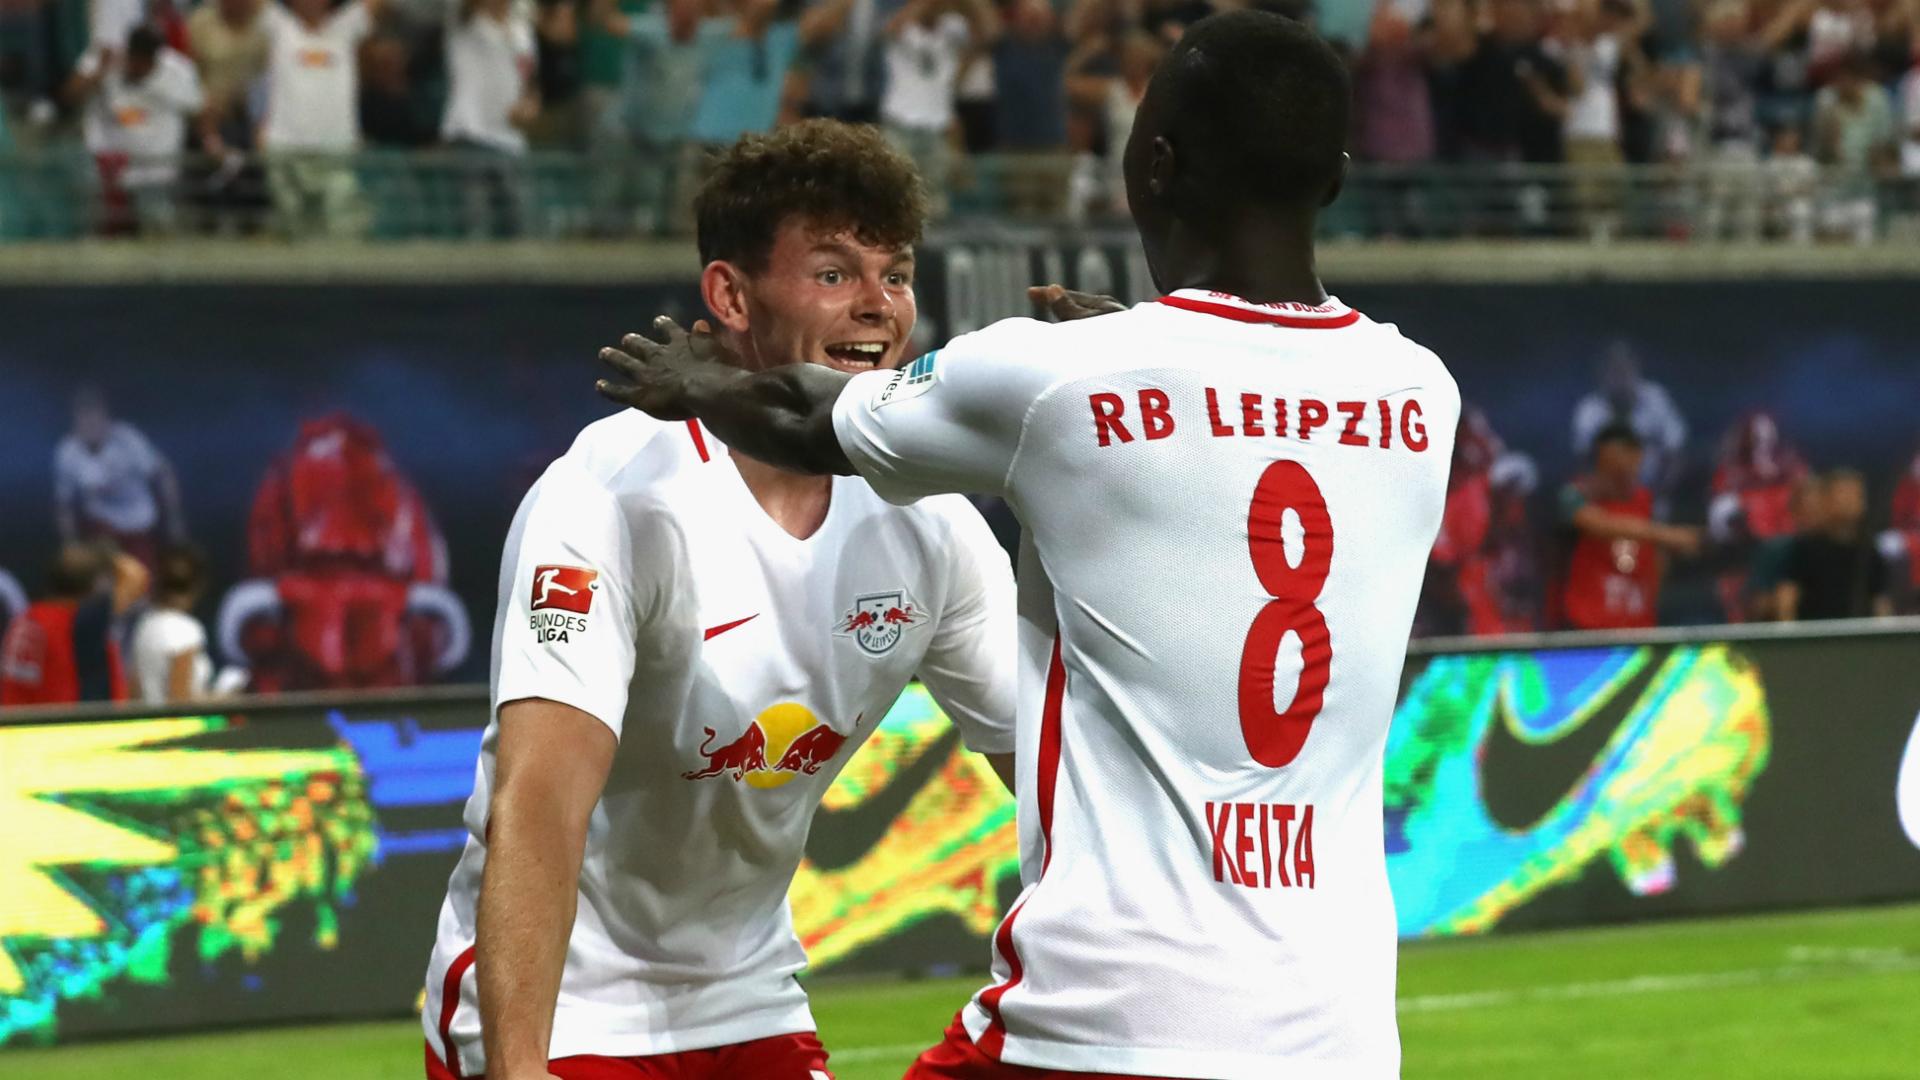 Burke targeting Bundesliga title with RB Leipzig